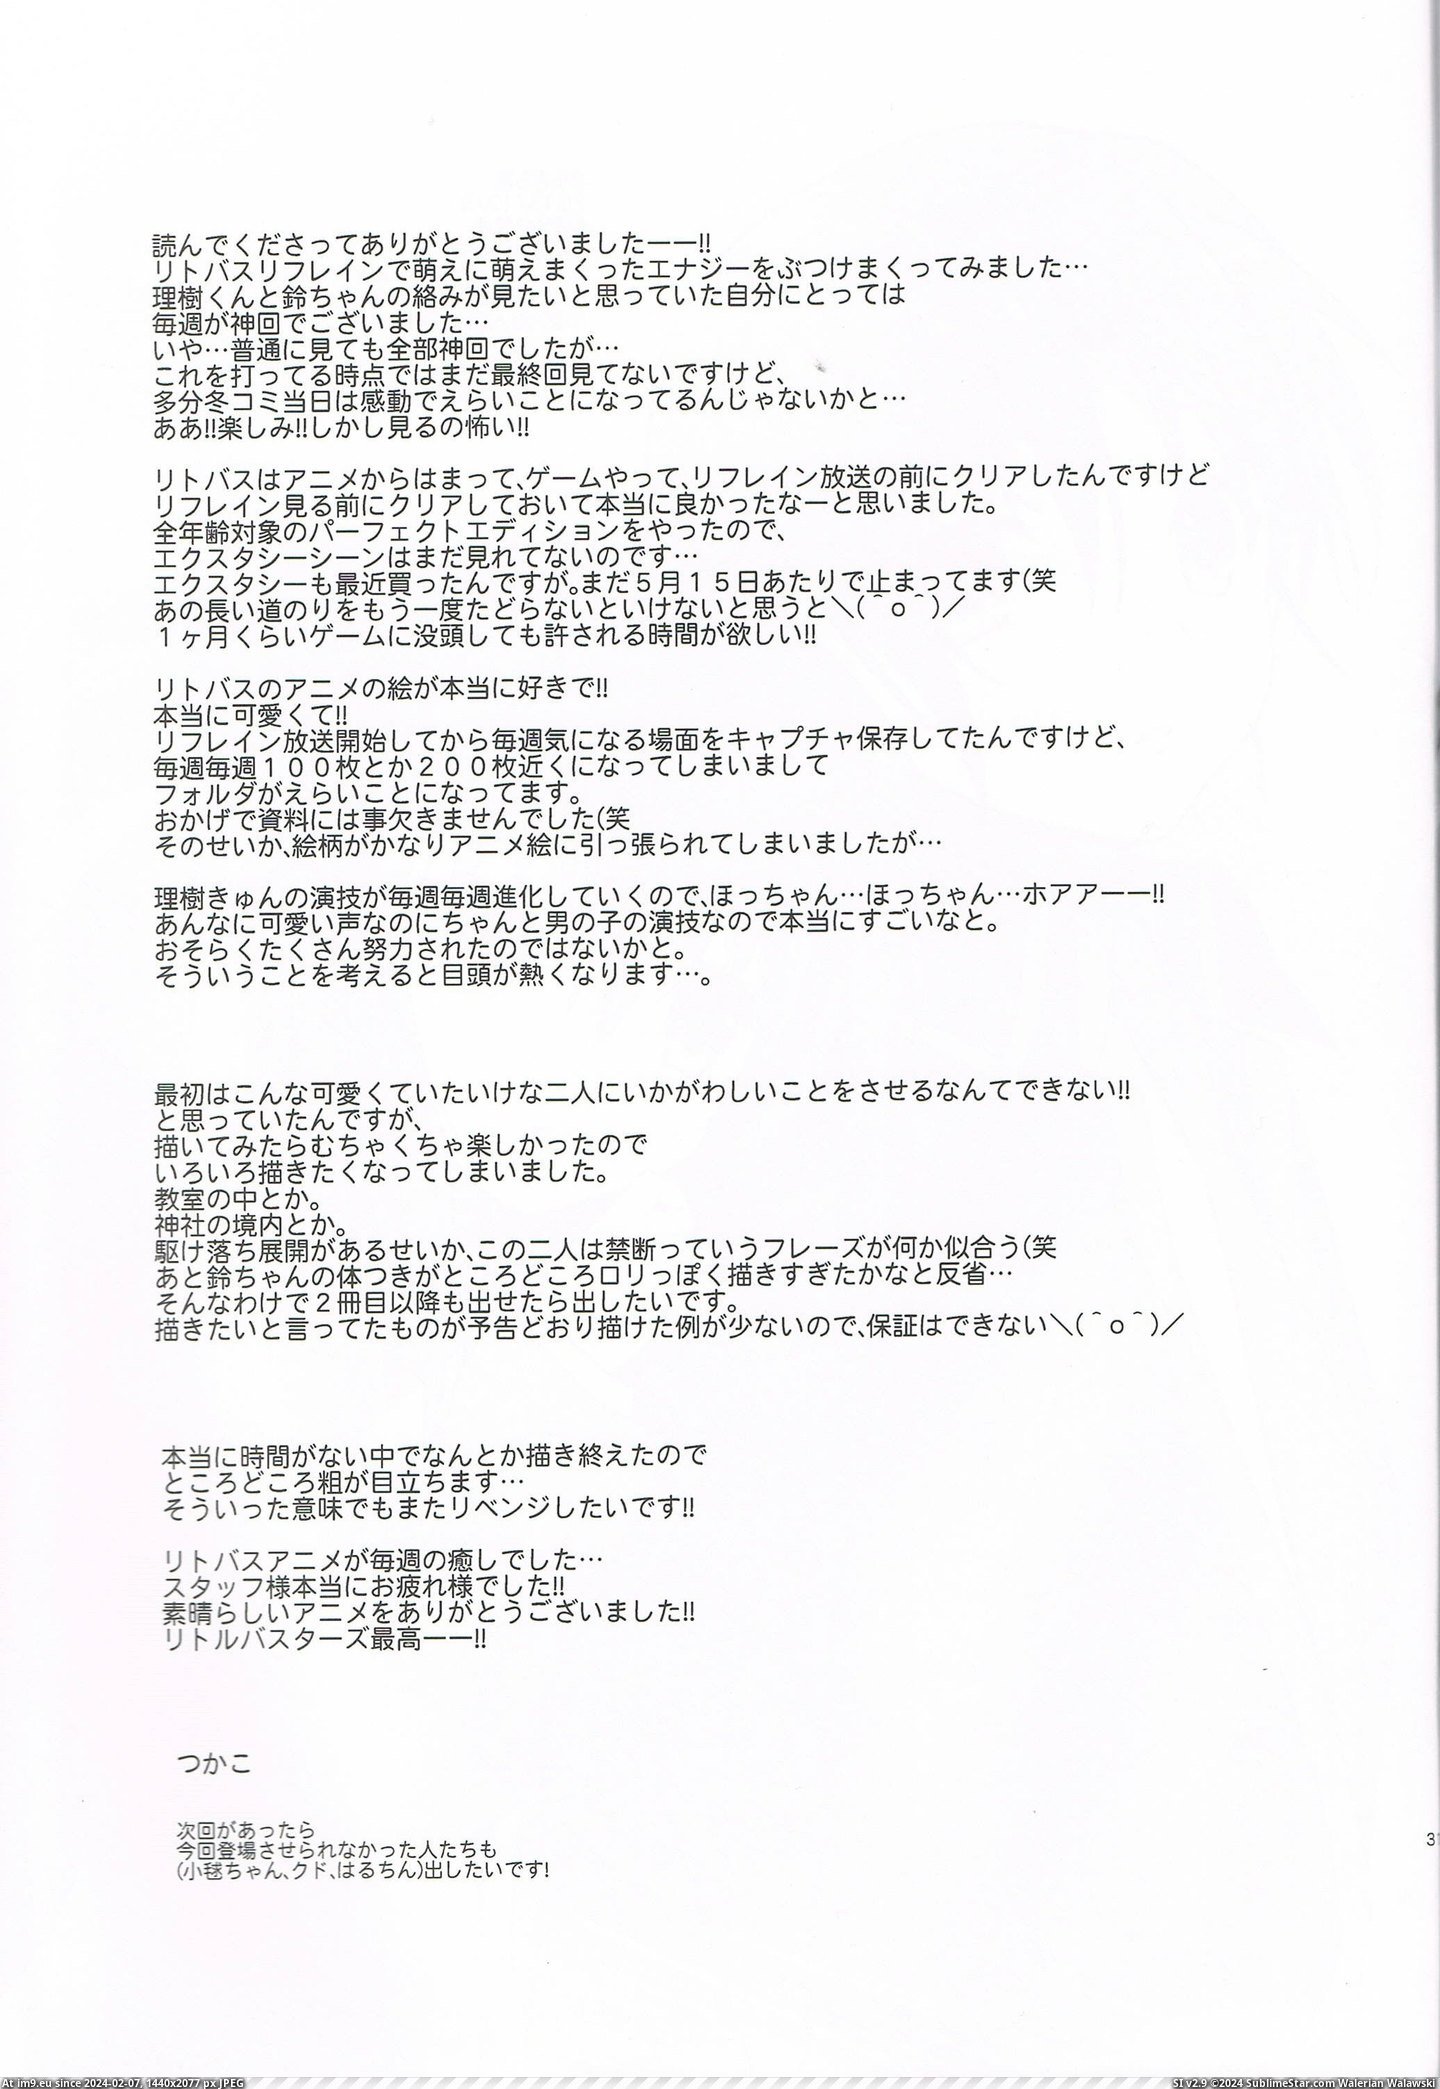 #Hentai #Busters #Saikou #Gallery [Hentai] Little Busters Saikou! (Little Busters Hentai Gallery) 62 Pic. (Obraz z album My r/HENTAI favs))